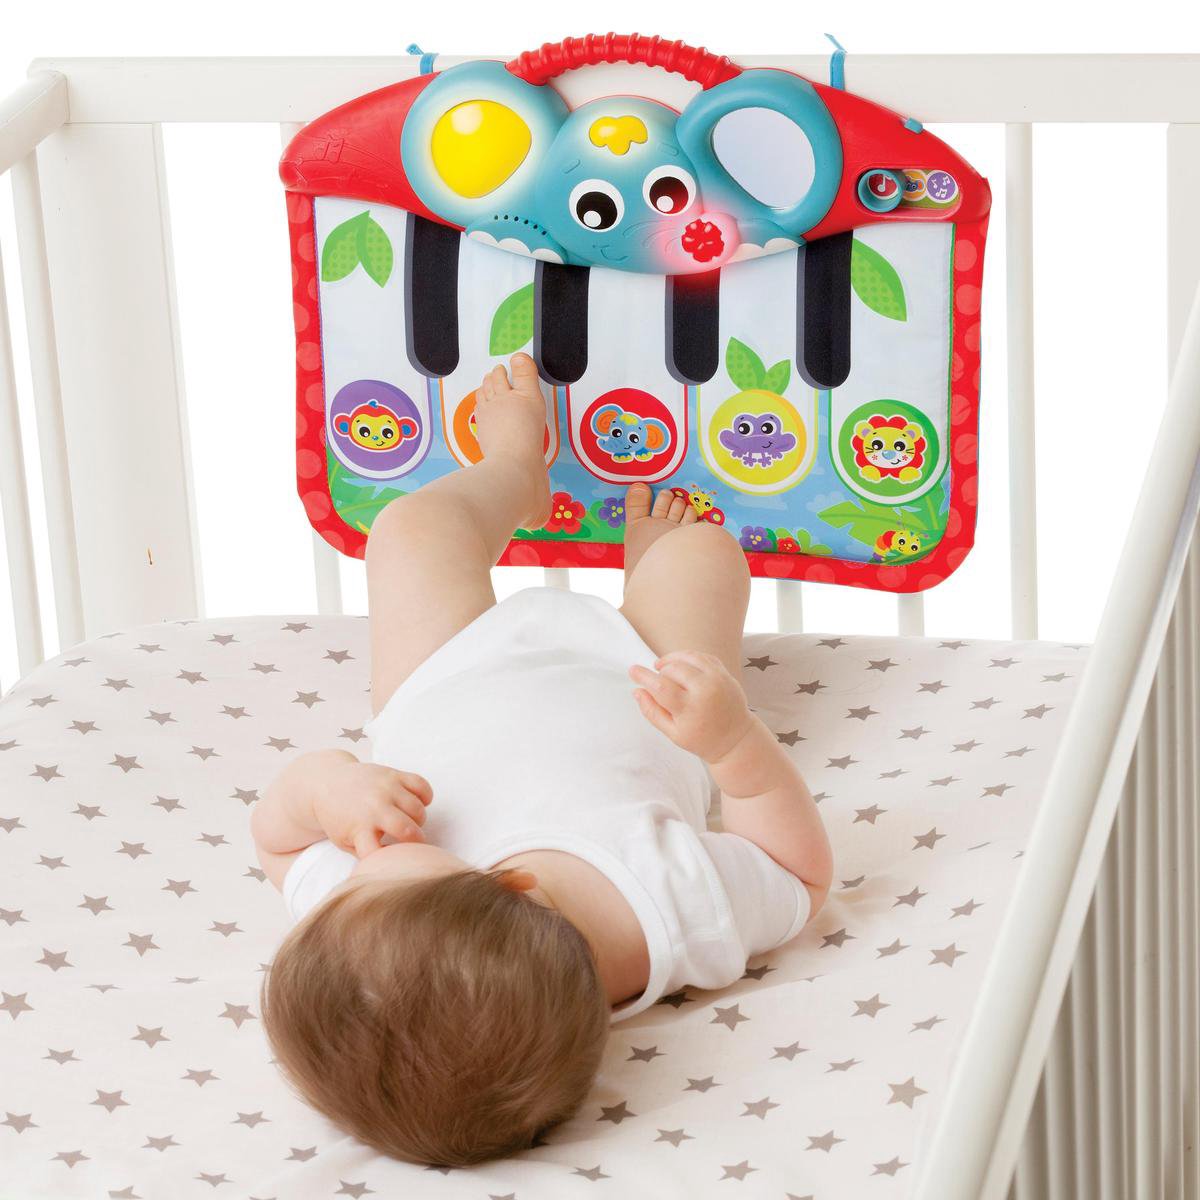 Zijdelings hoog Graag gedaan Playgro Muzikale Trappelkussen - Pianomat - Interactief babyspeelgoed -  Vloerspeeltje... | bol.com